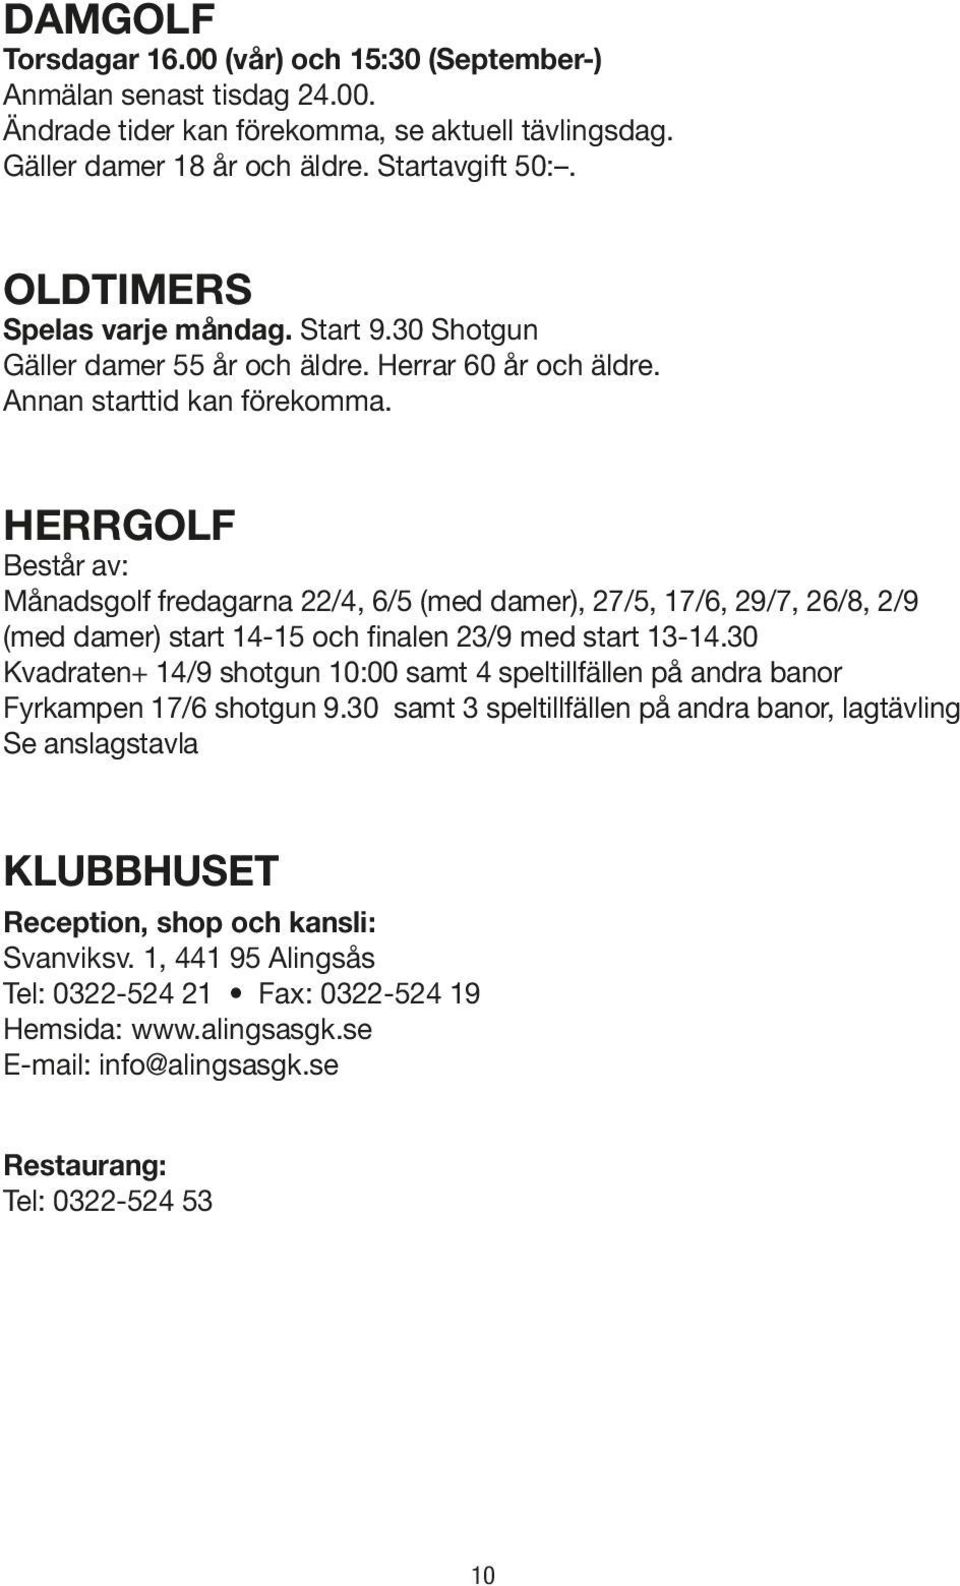 HERRGOLF Består av: Månadsgolf fredagarna 22/4, 6/5 (med damer), 27/5, 17/6, 29/7, 26/8, 2/9 (med damer) start 14-15 och finalen 23/9 med start 13-14.